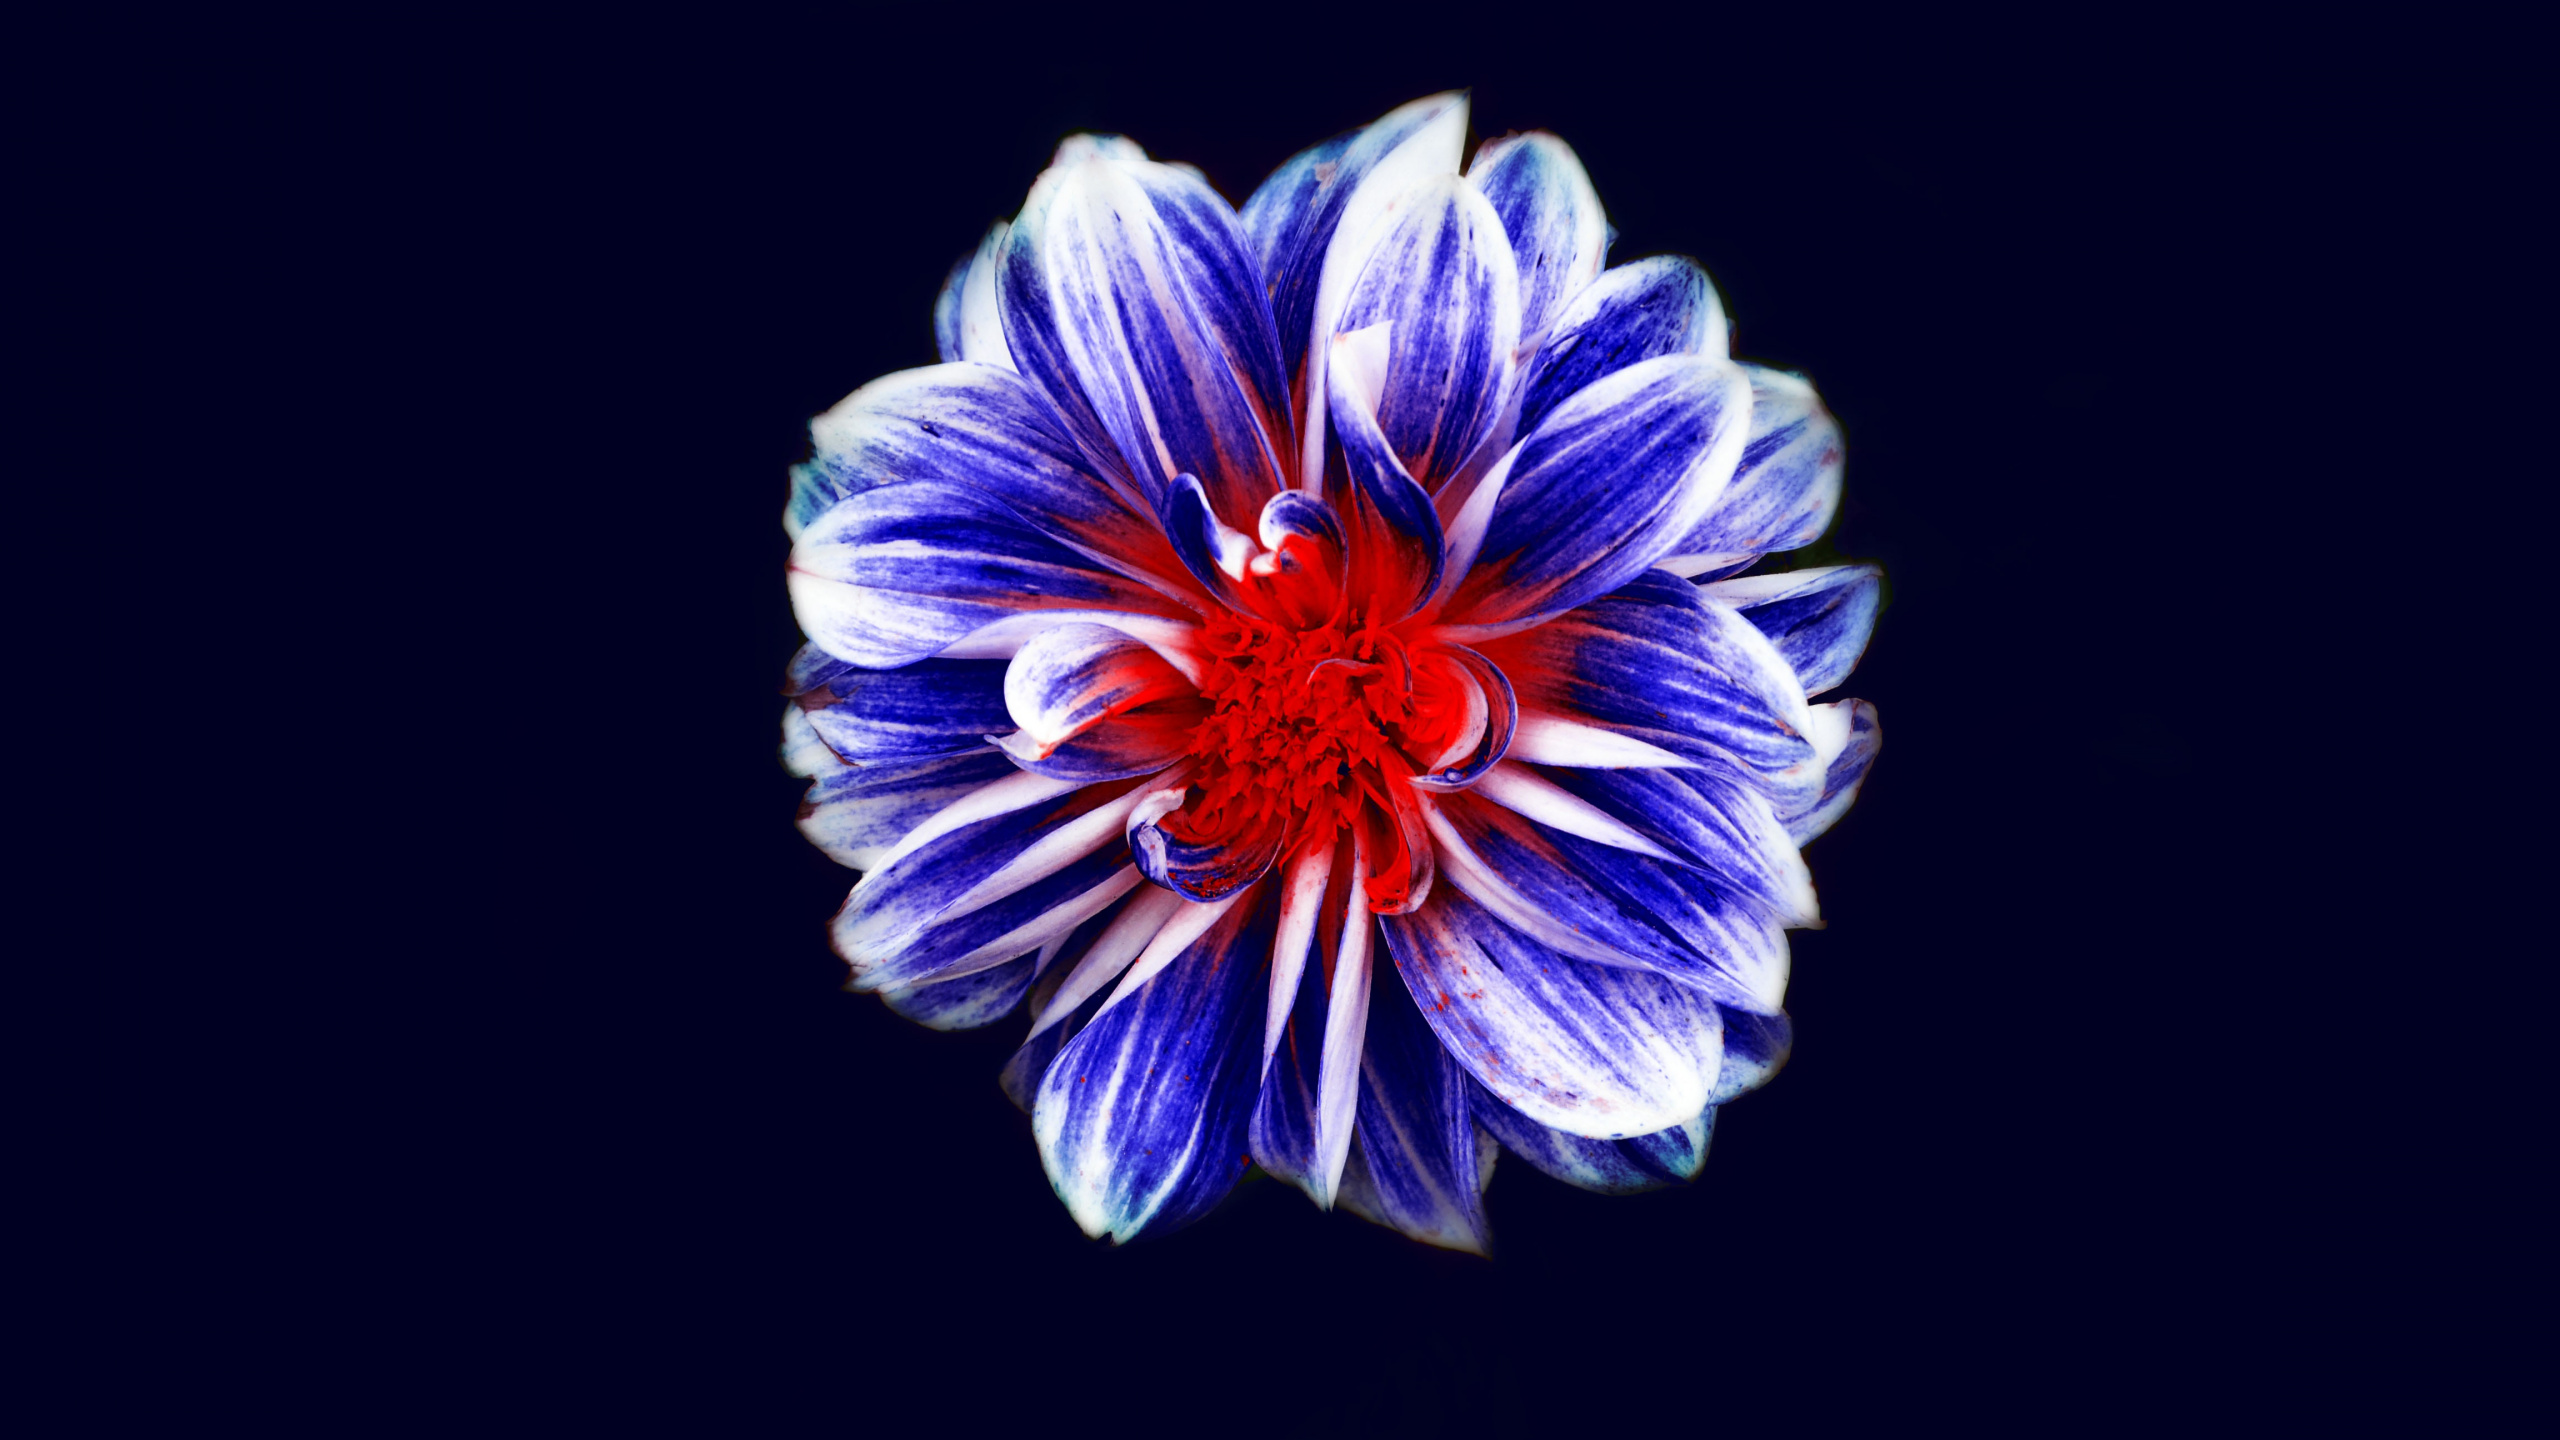 显花植物, 钴蓝色的, 电蓝色的, 蓝色的花, 年度工厂 壁纸 2560x1440 允许